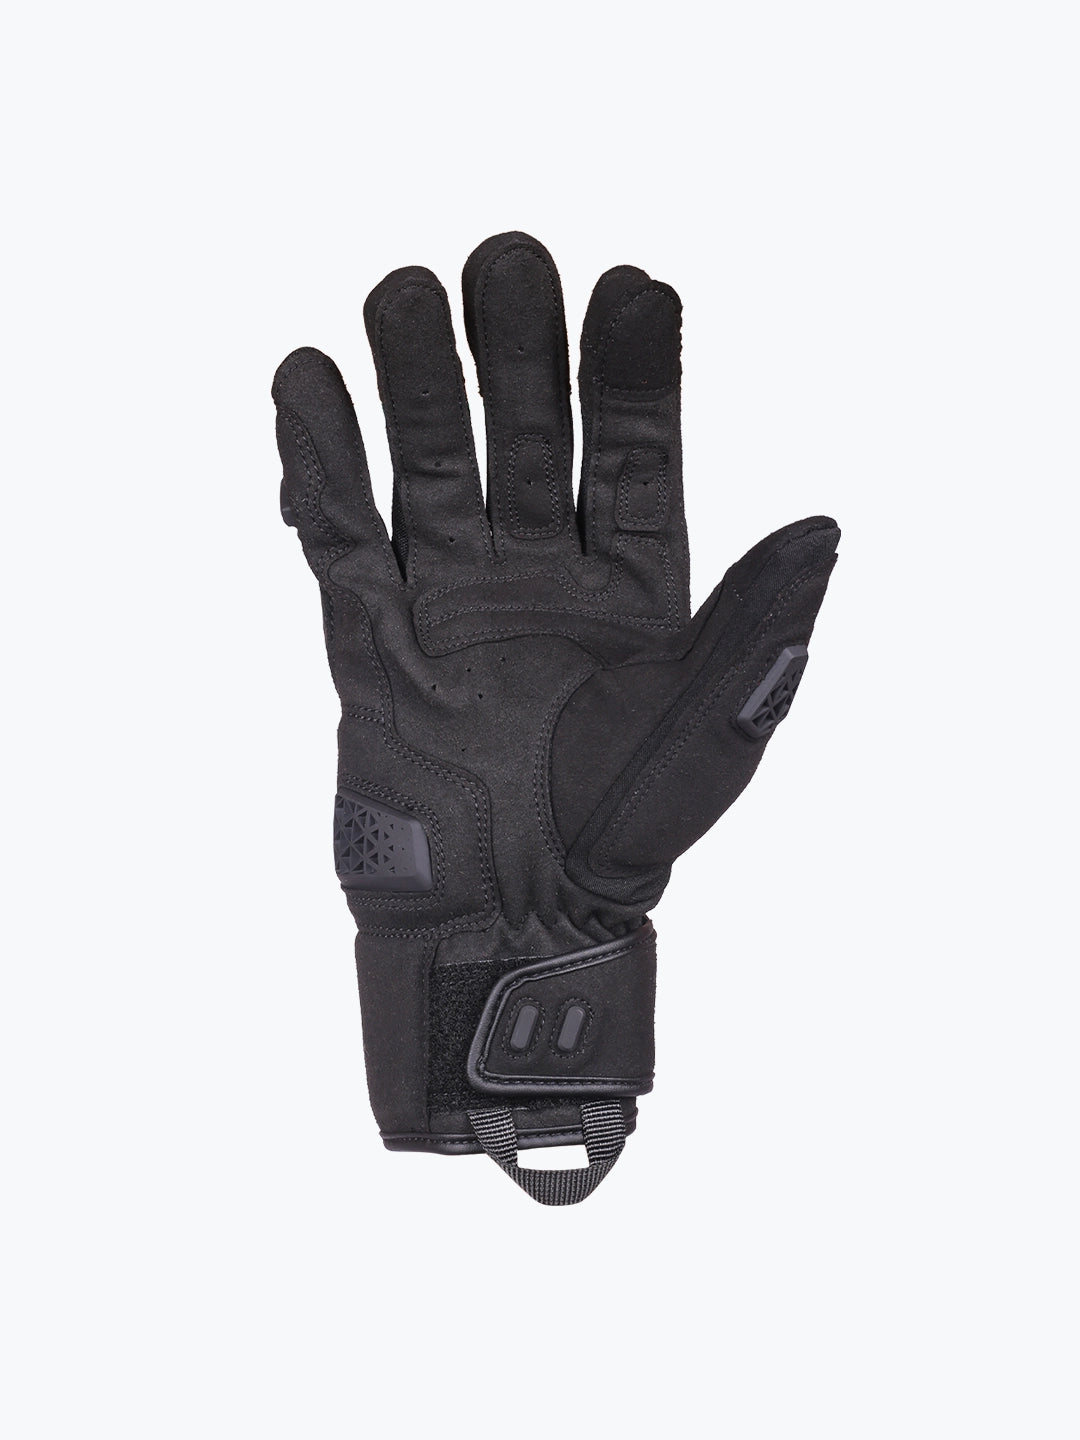 Motowolf Gloves Black 0338